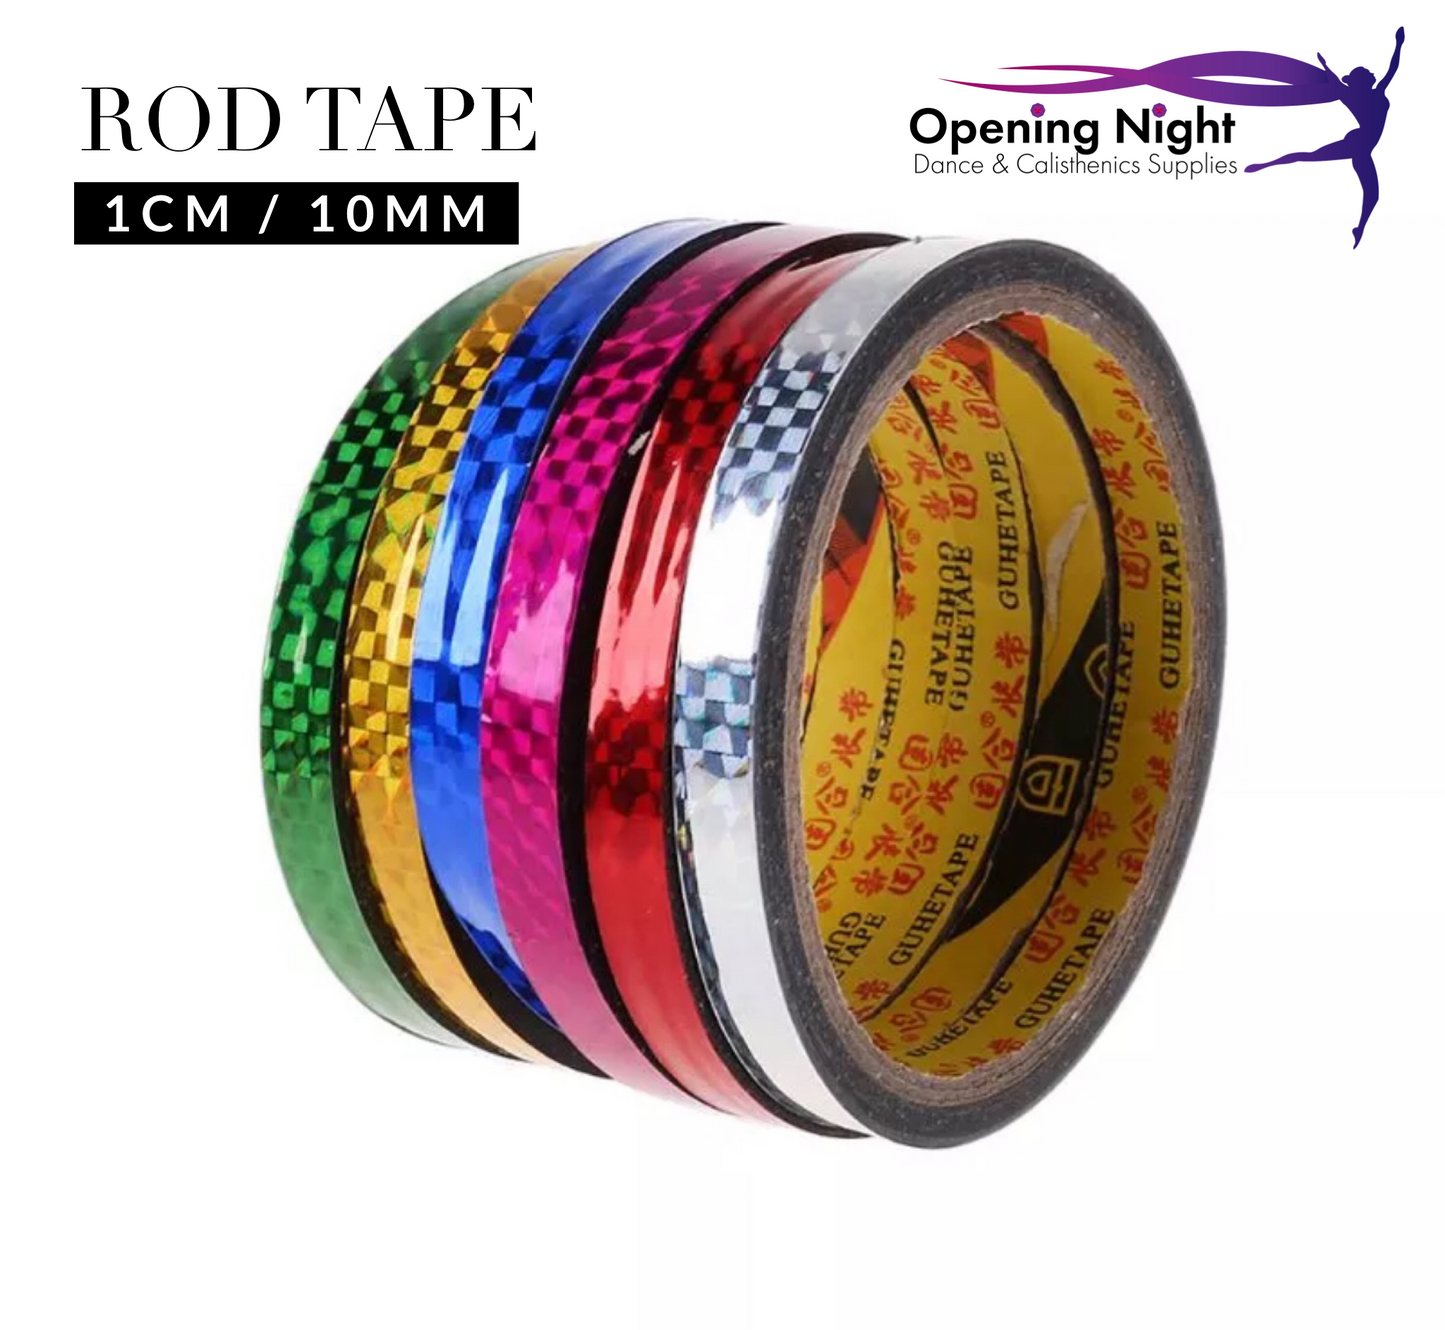 Rod Tape - 1cm / 10mm width